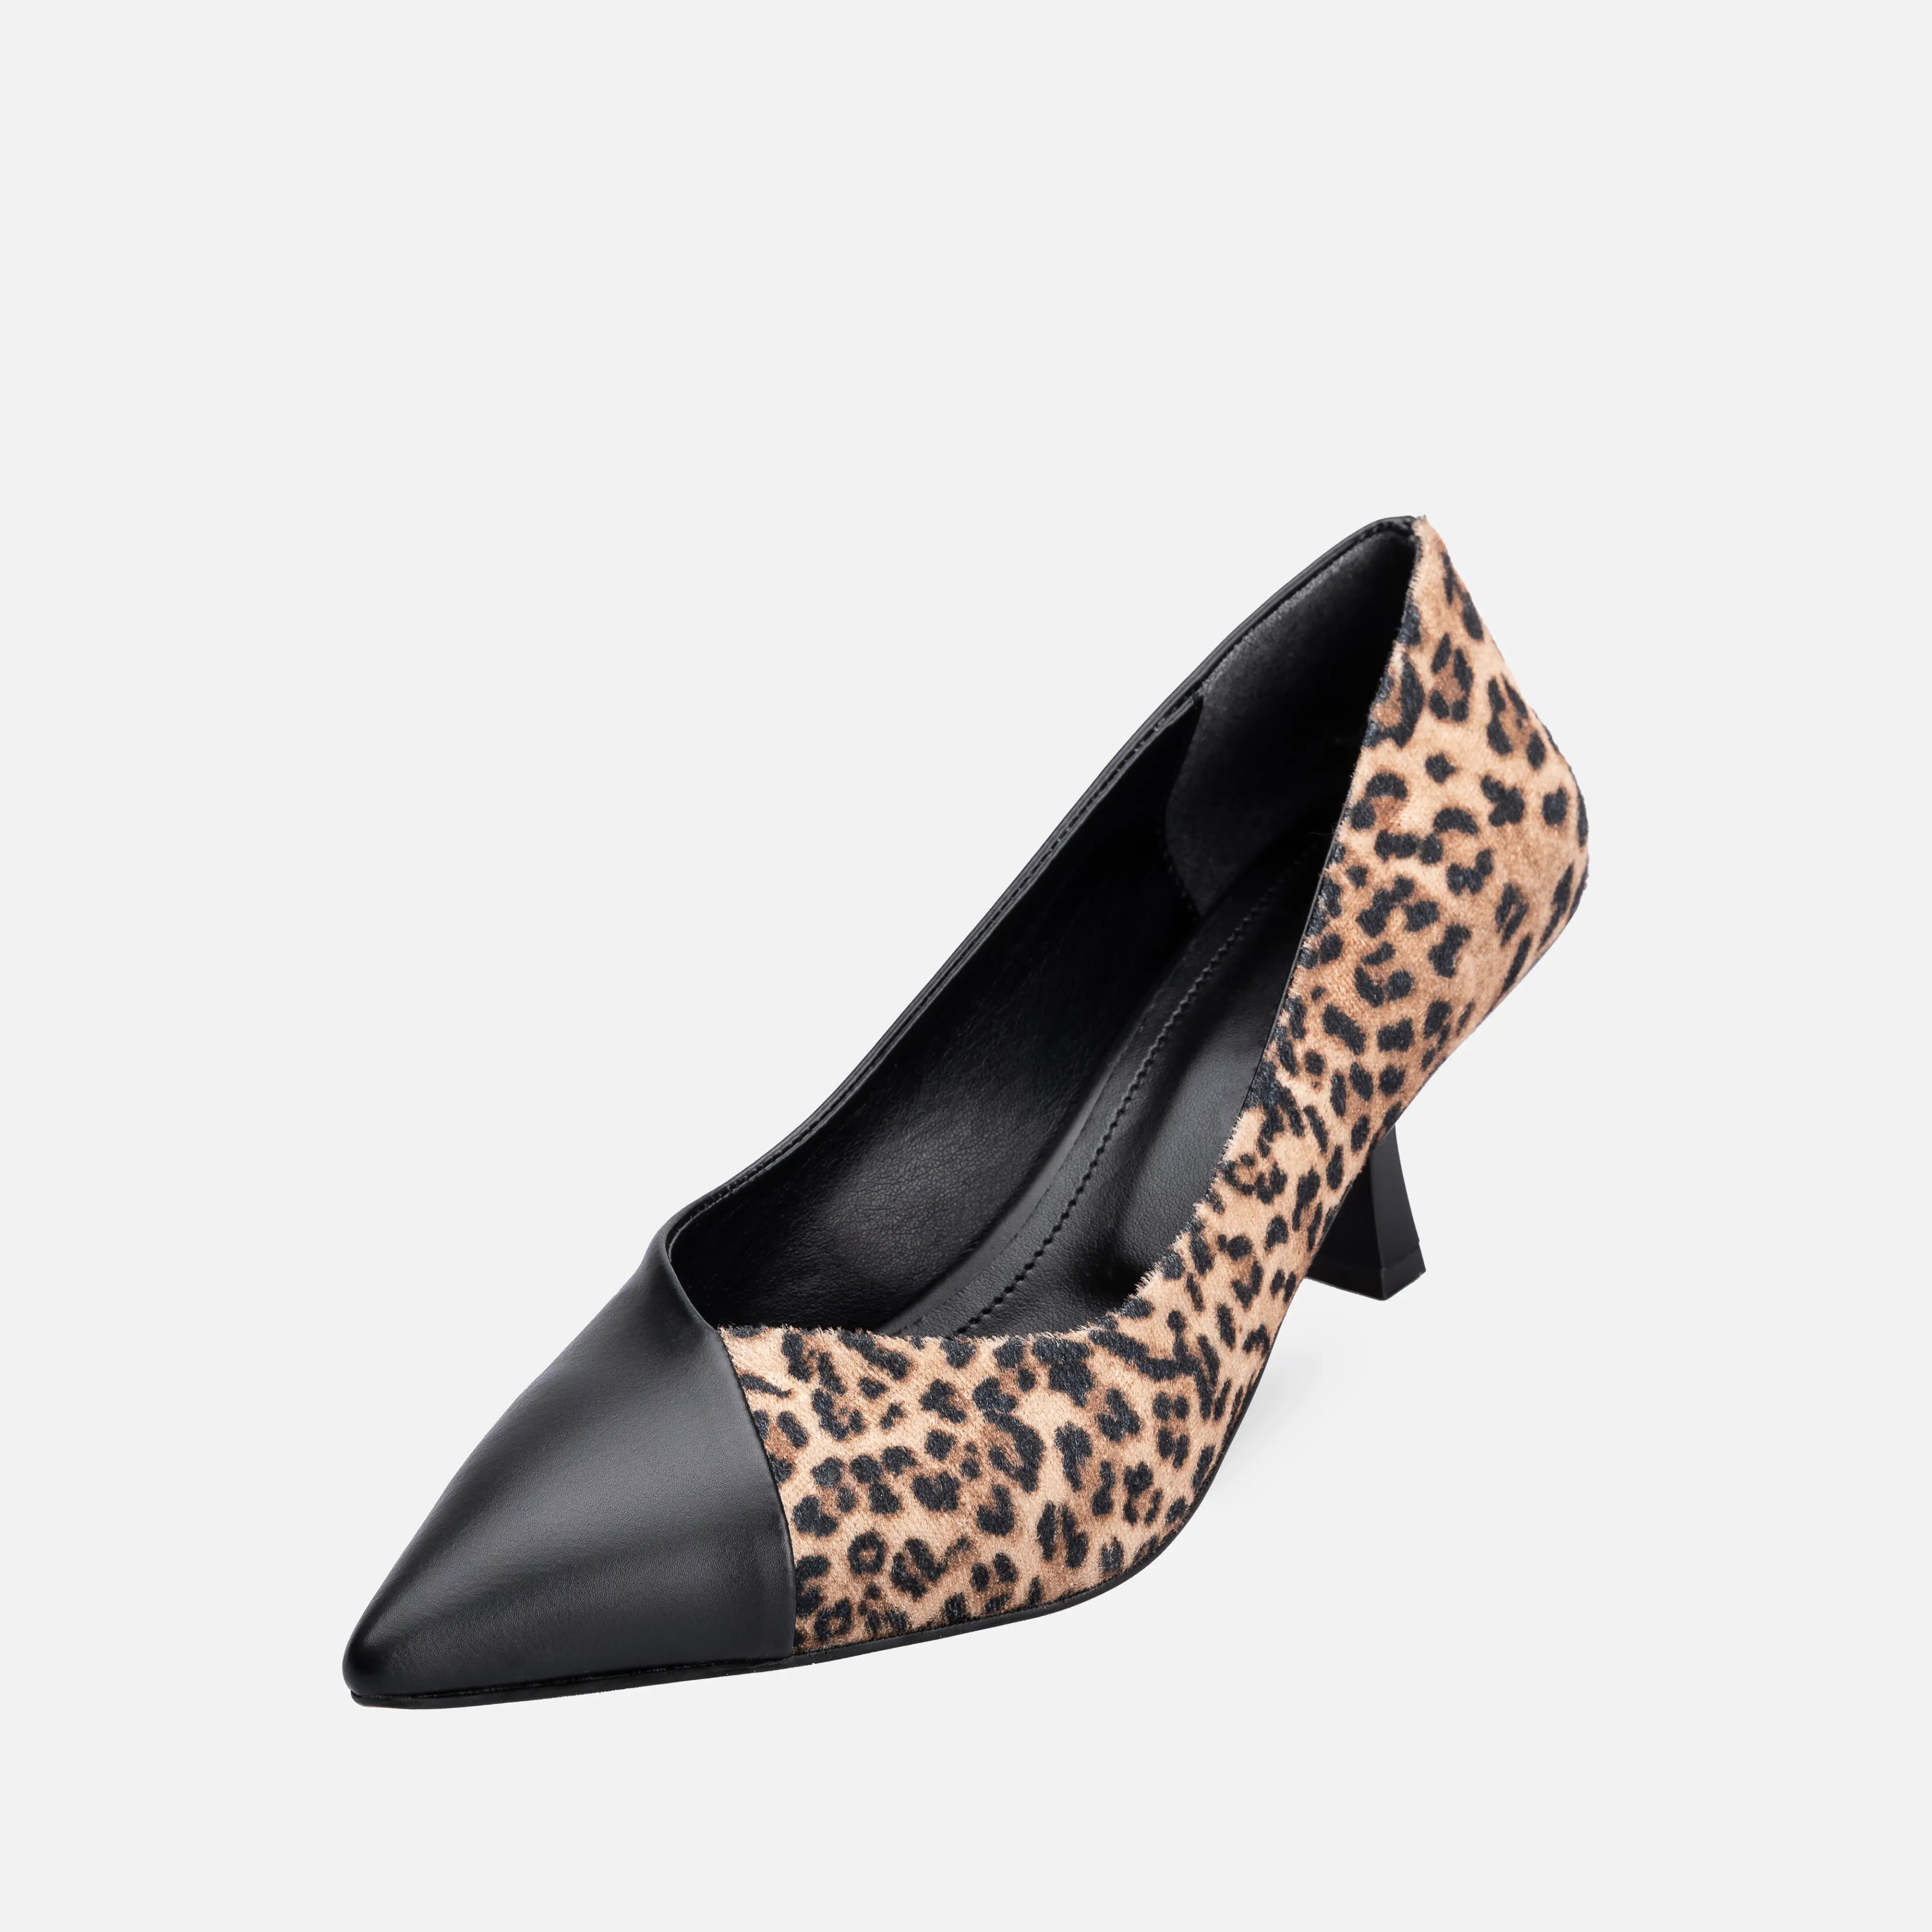 Vivien High Heeled Shoes Pumps Leopard Print 